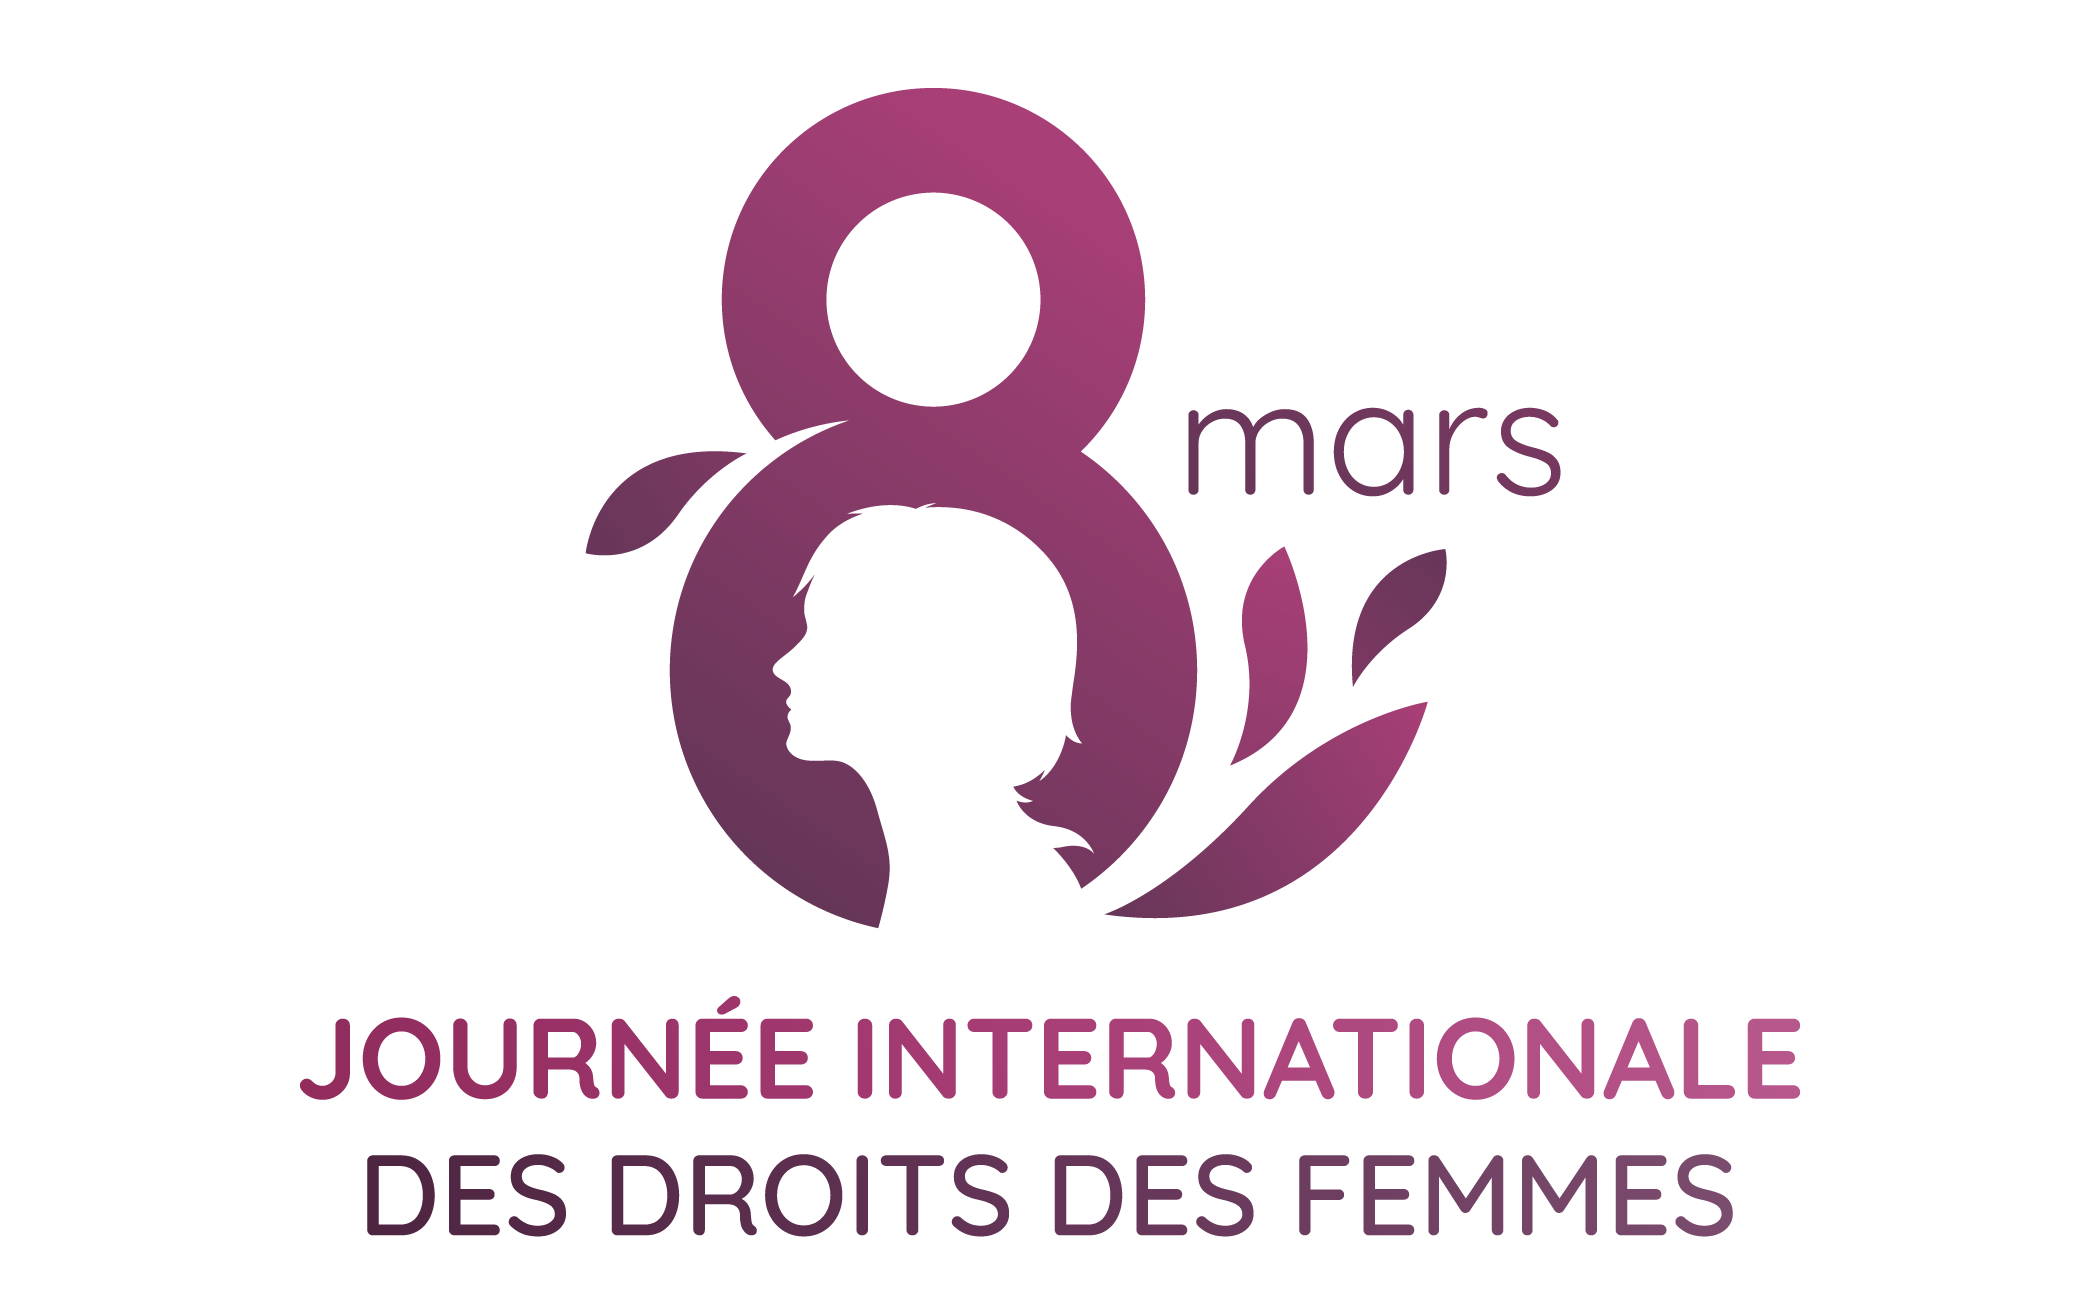 8 Mars 2022 Journée Internationale des droits des femmes